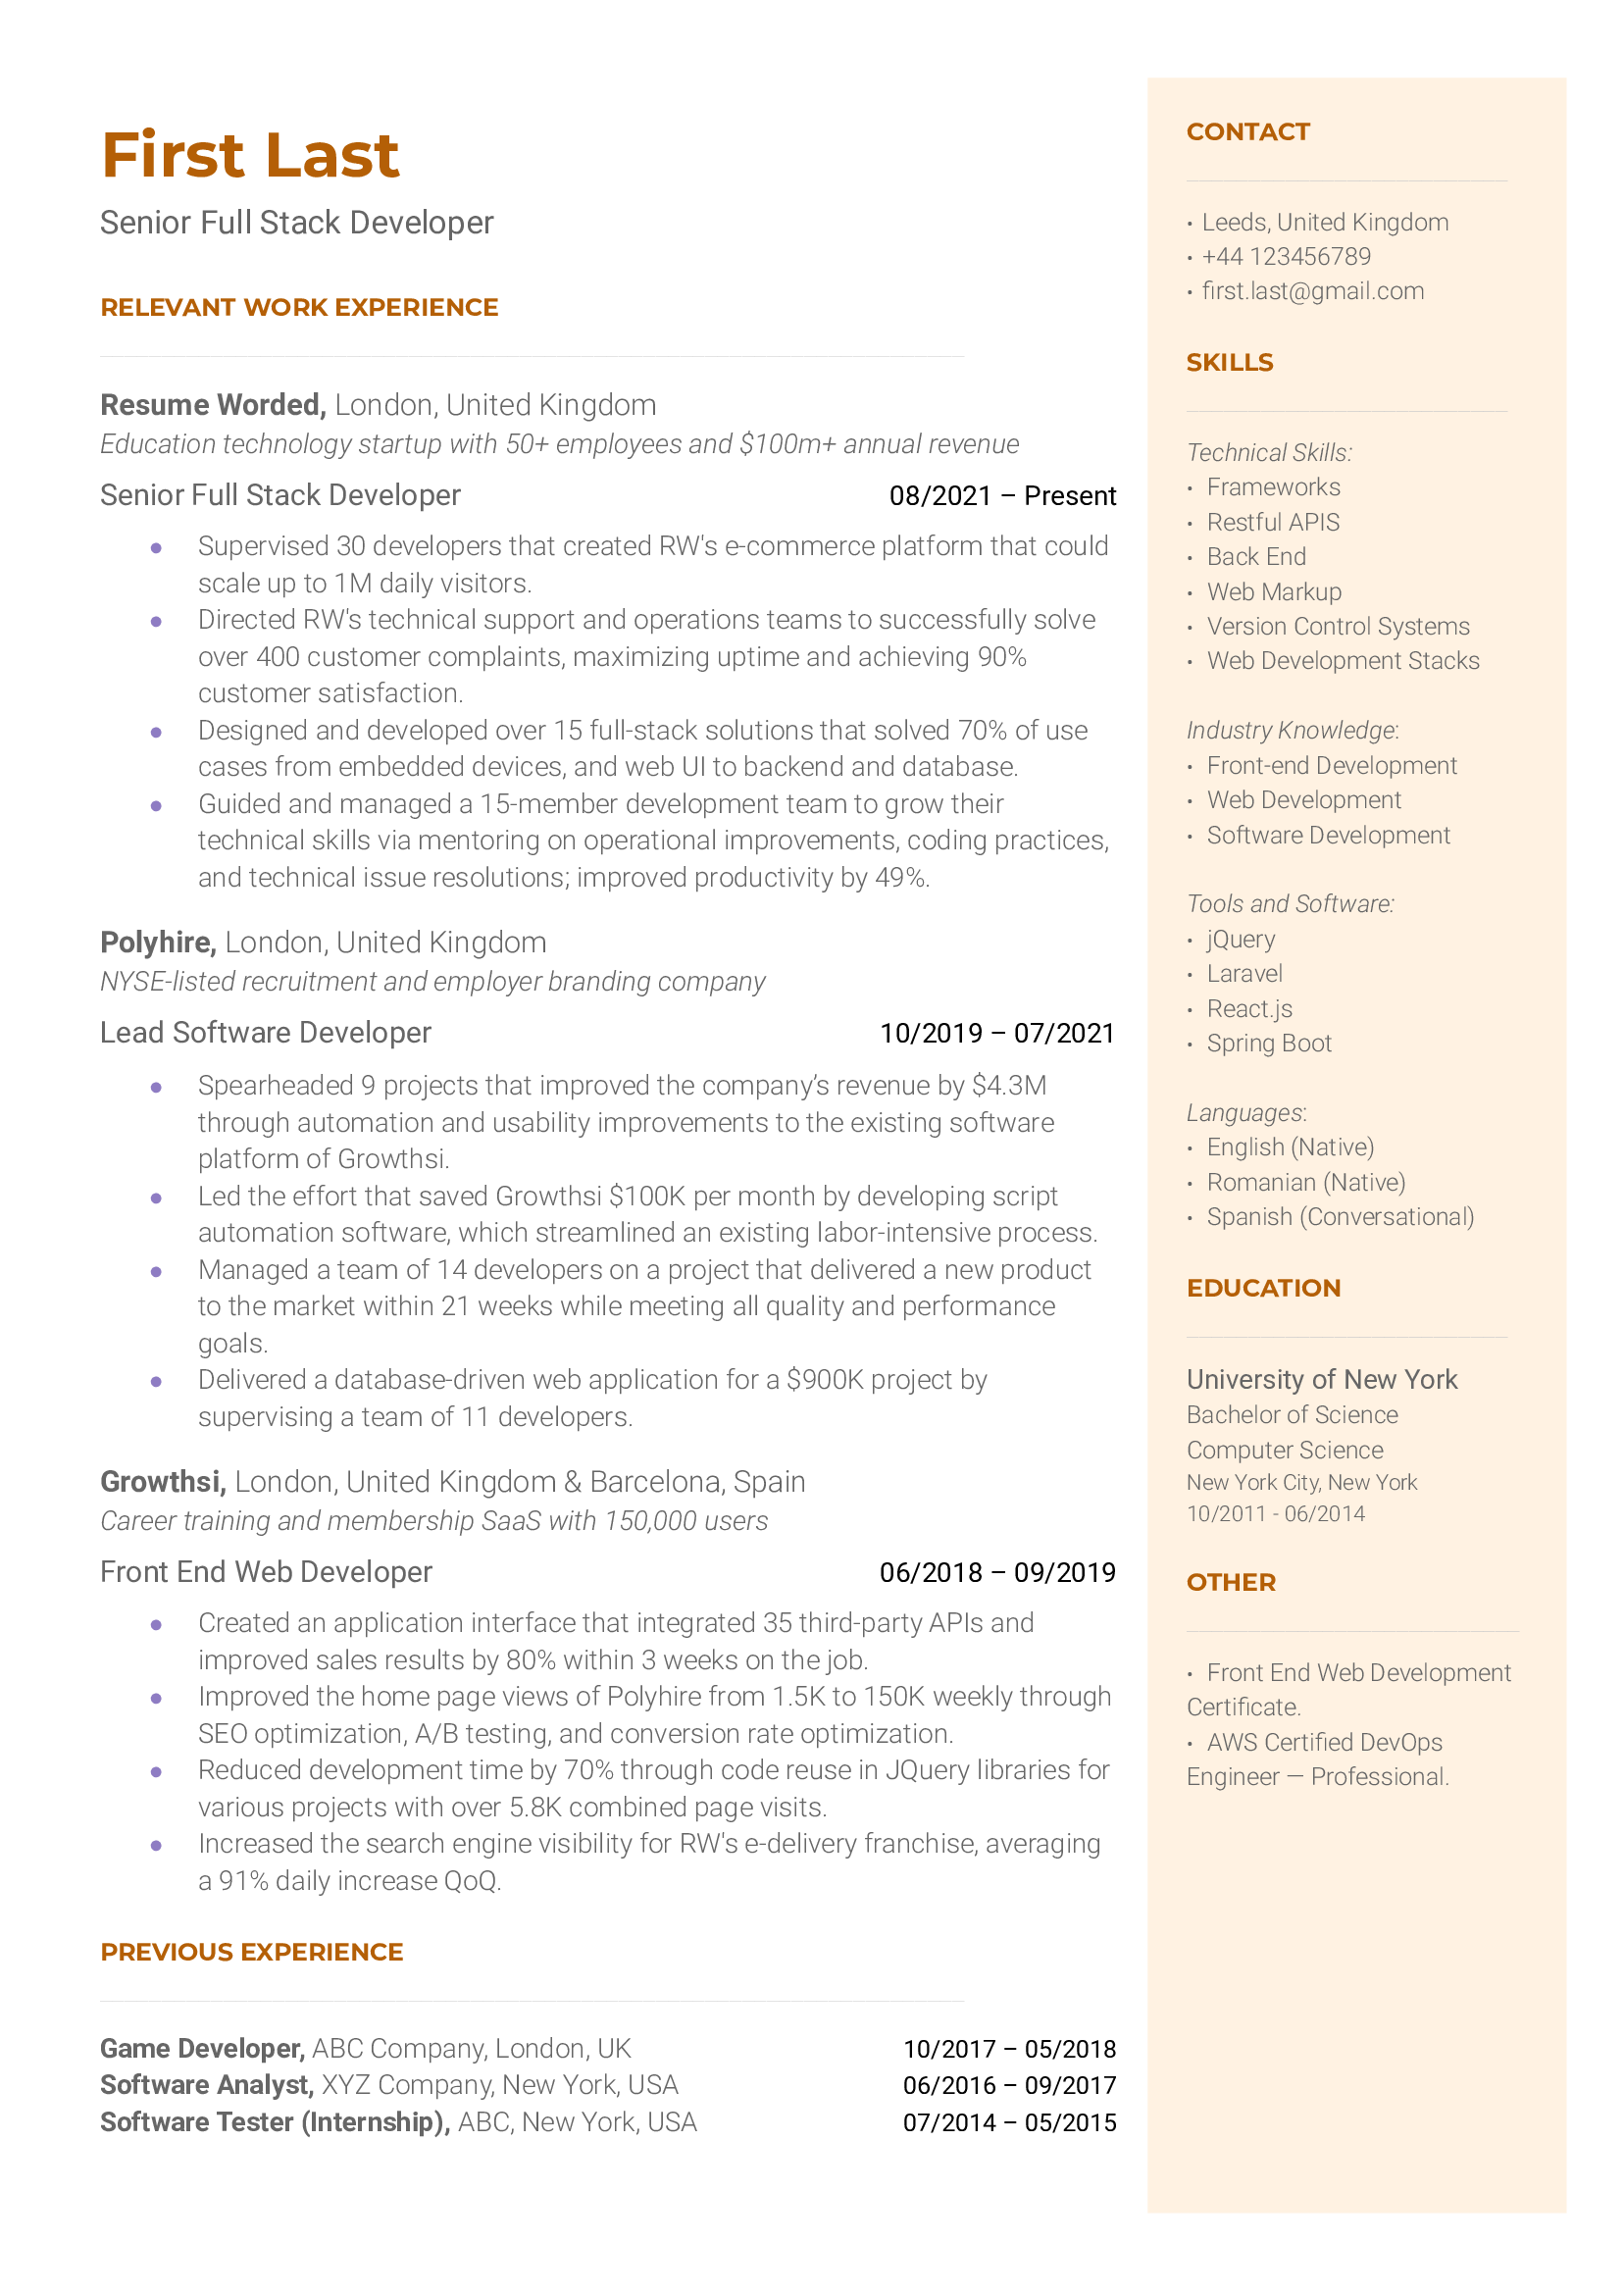 Senior Full Stack Developer Resume Sample